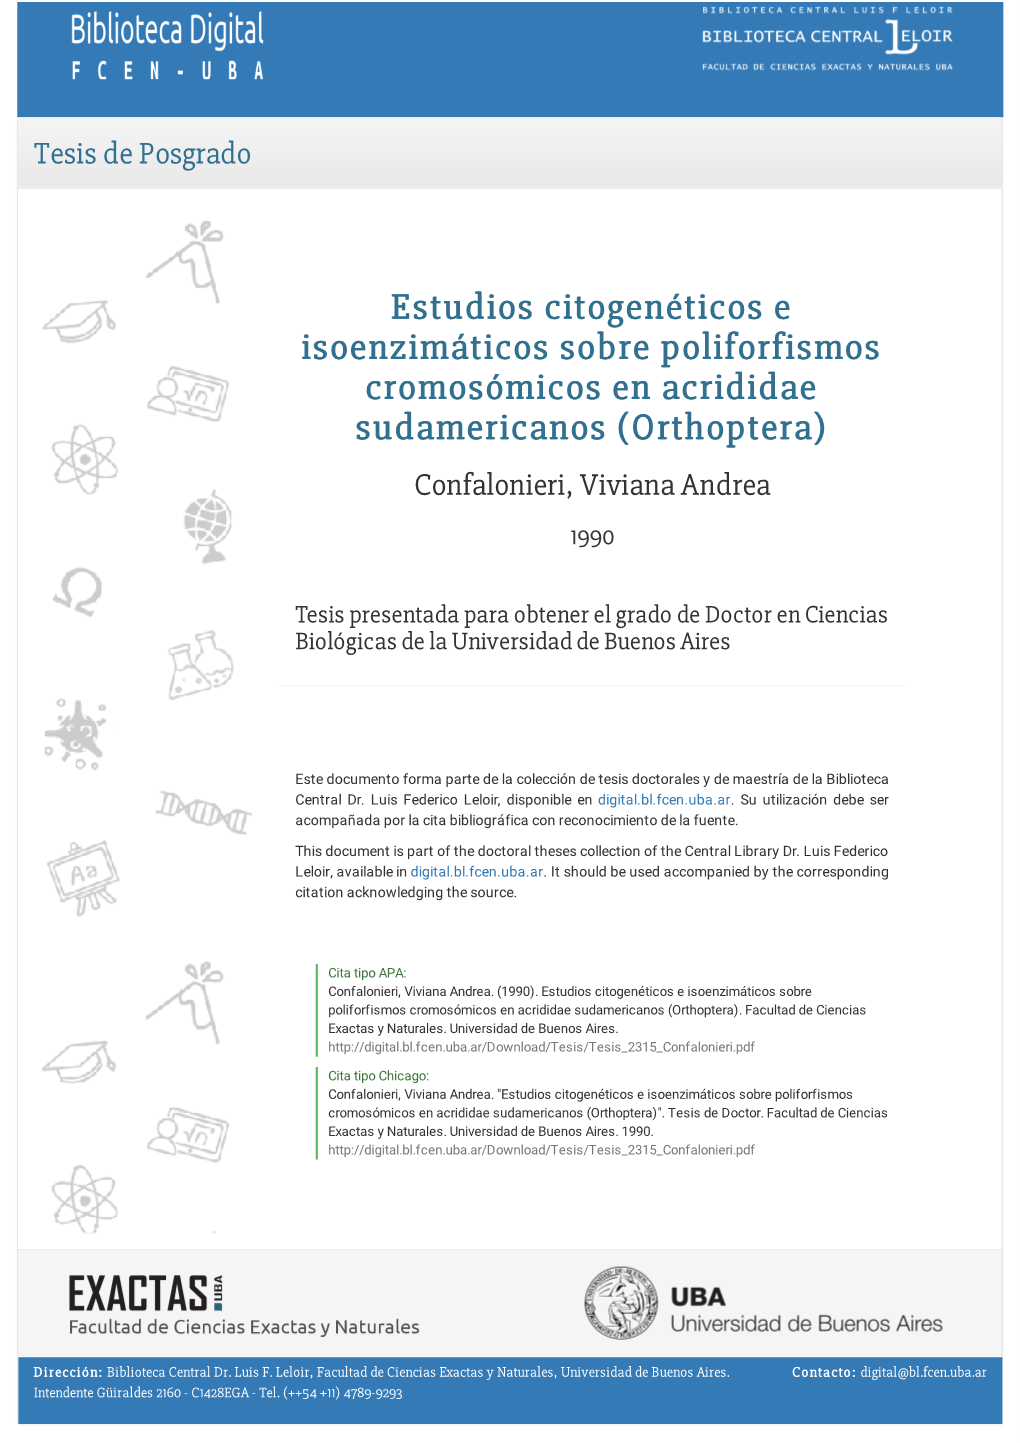 Estudios Citogenéticos E Isoenzimáticos Sobre Poliforfismos Cromosómicos En Acrididae Sudamericanos (Orthoptera) Confalonieri, Viviana Andrea 1990